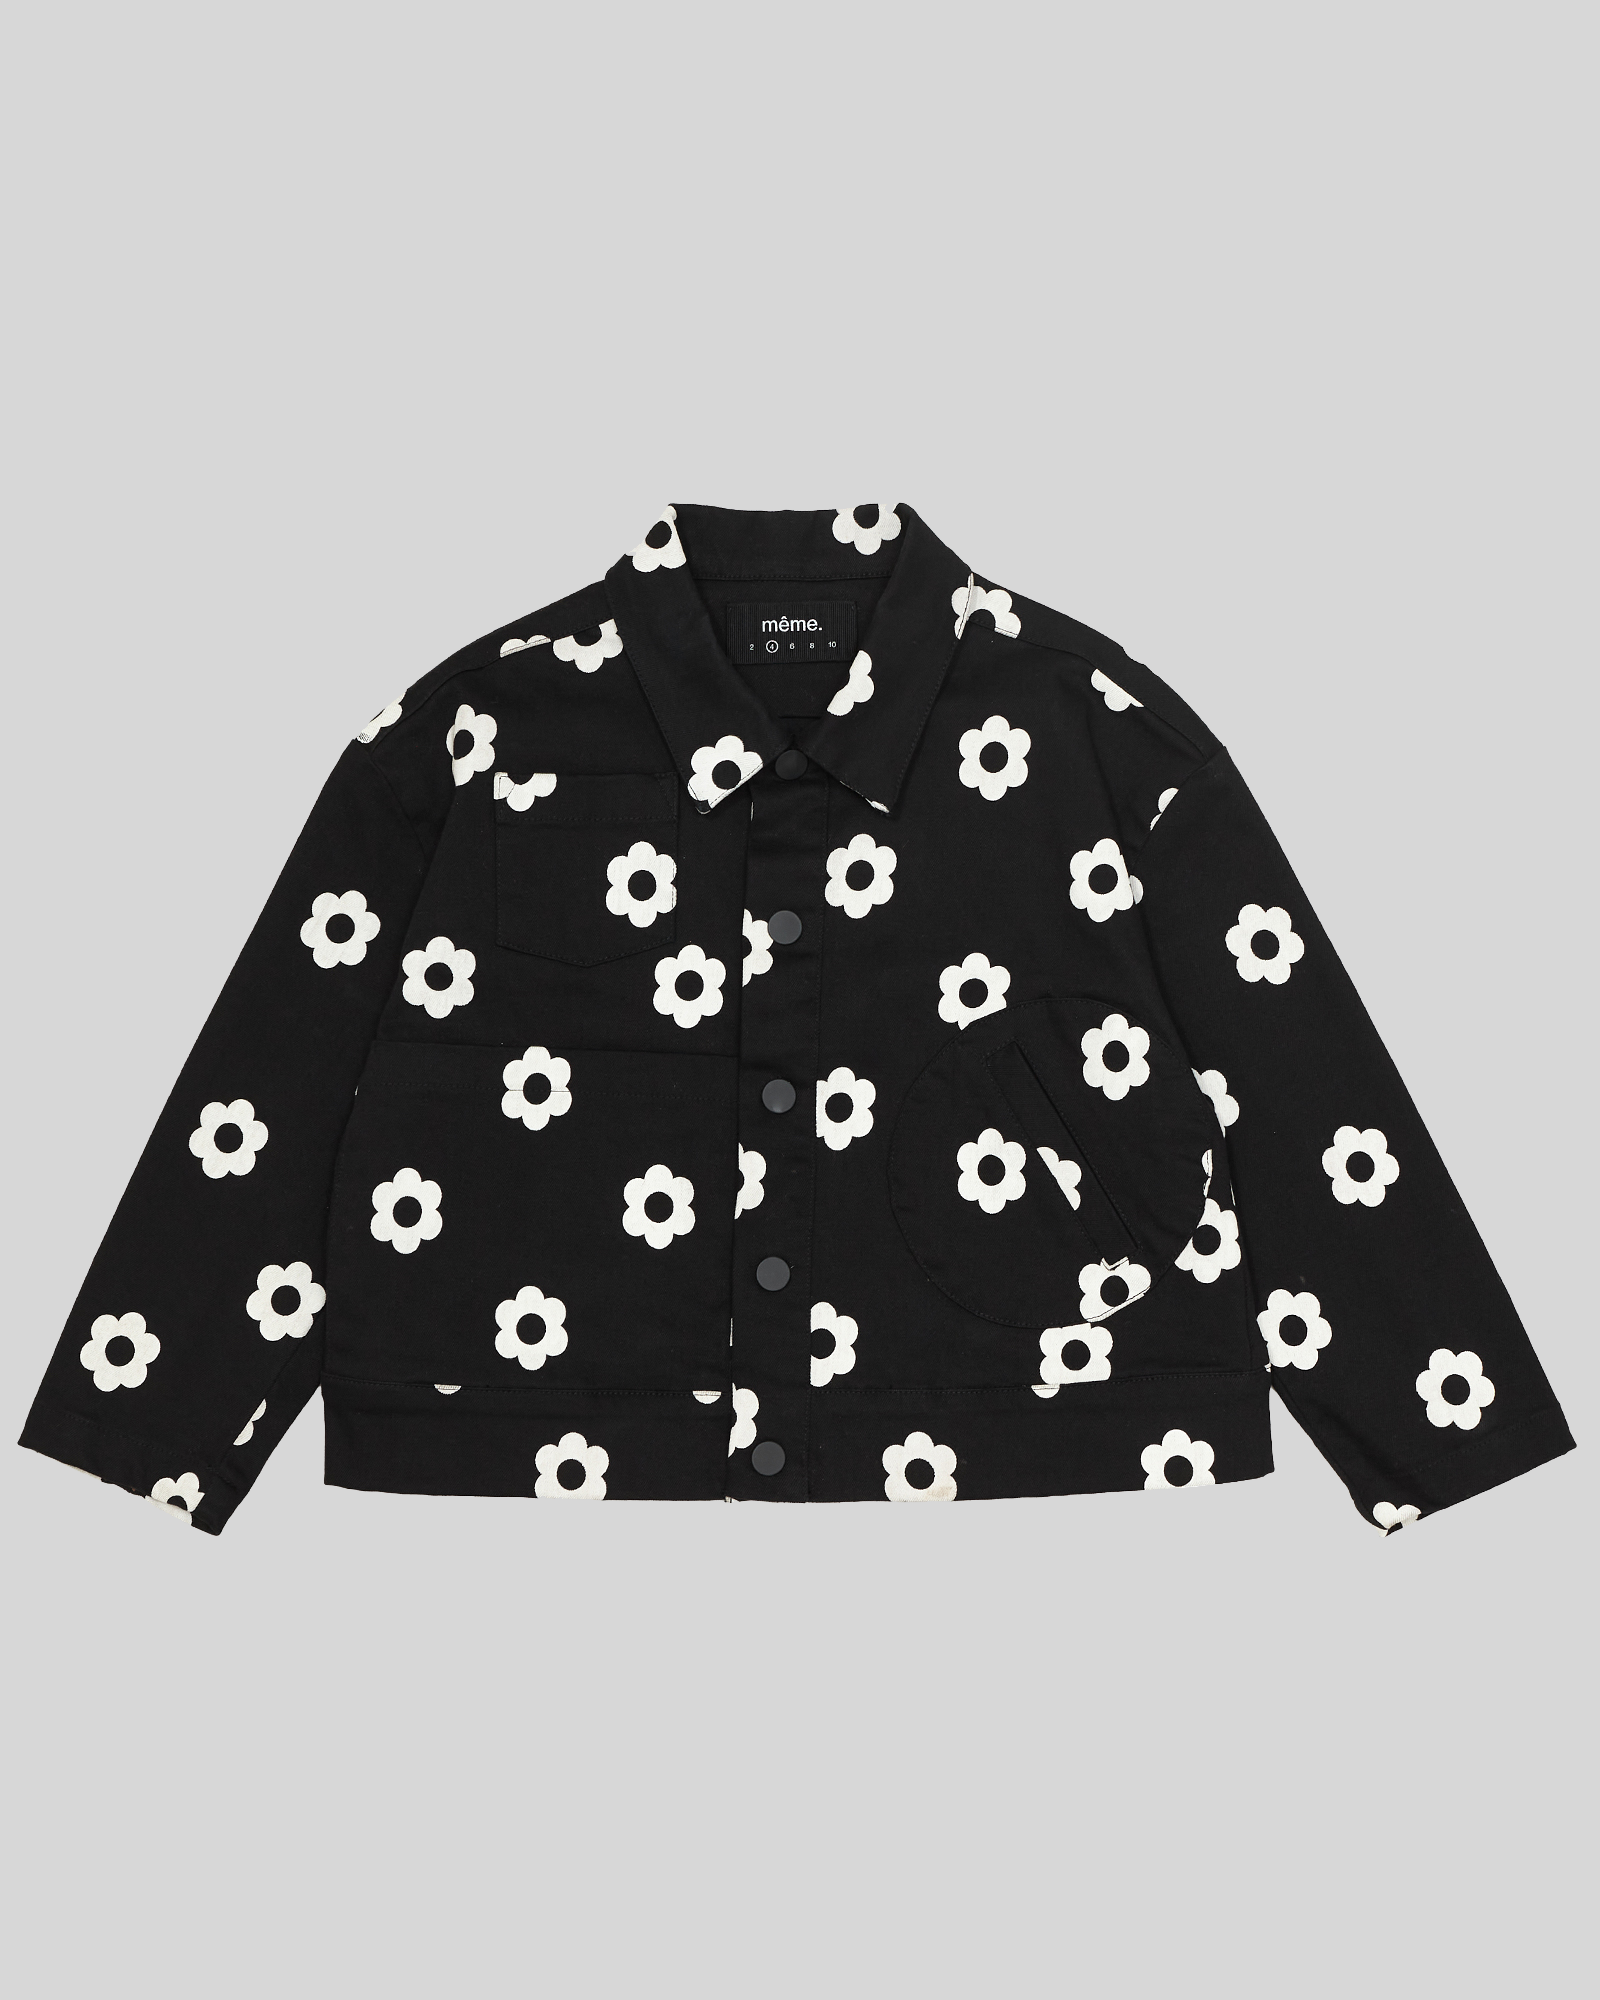 pierre chore jacket - daisy dots